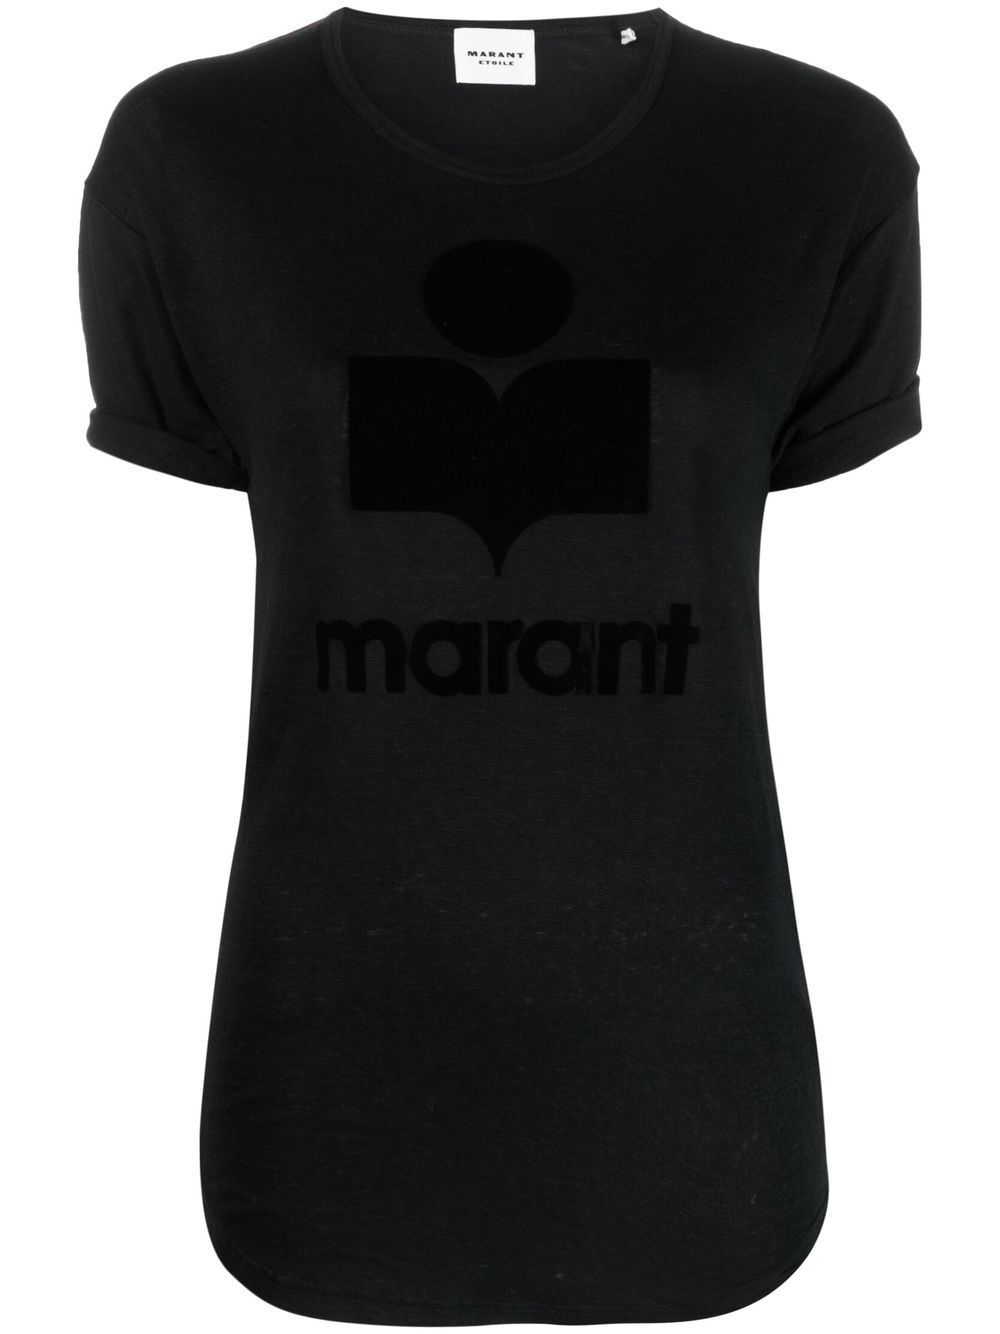 Image 1 of MARANT ÉTOILE Koldi logo T-shirt